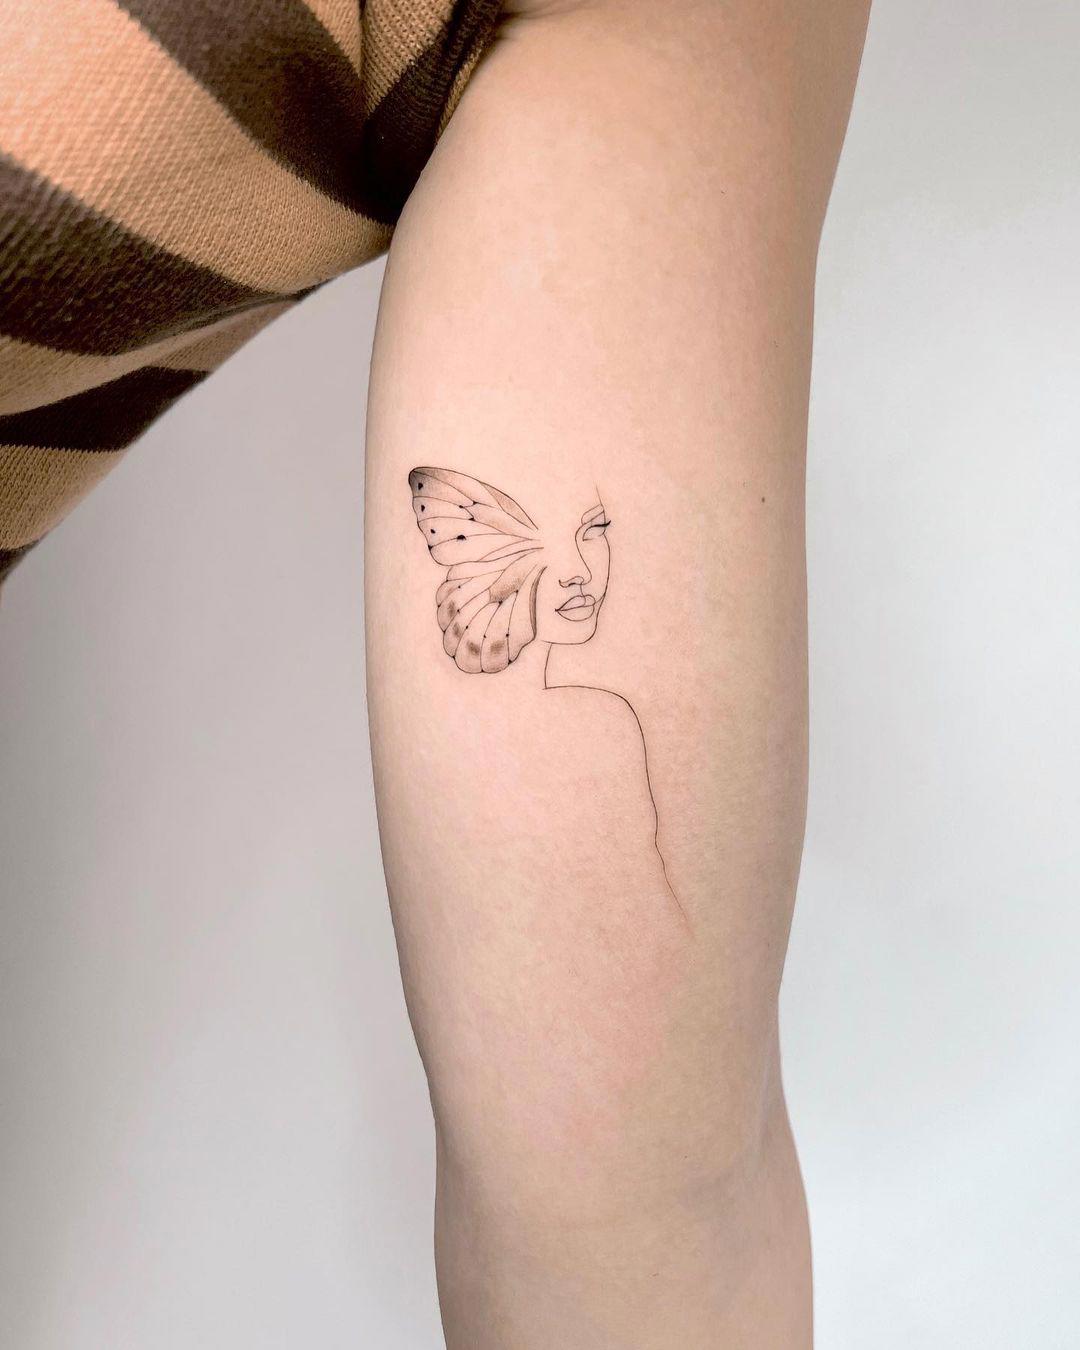 Tattoo mitad mariposa, mitad silueta de mujer